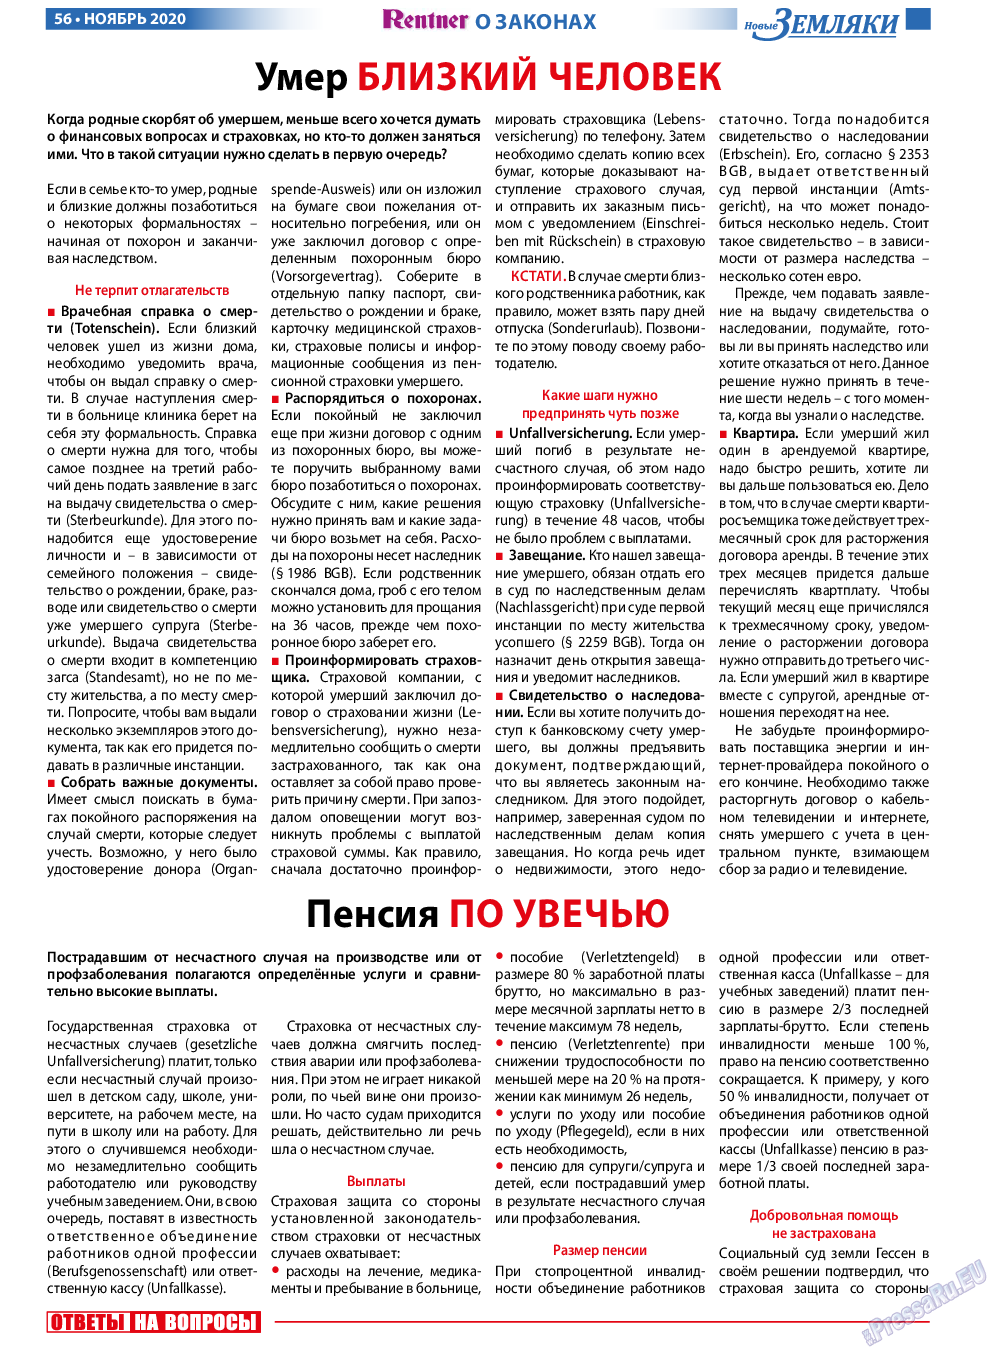 Новые Земляки, газета. 2020 №11 стр.56